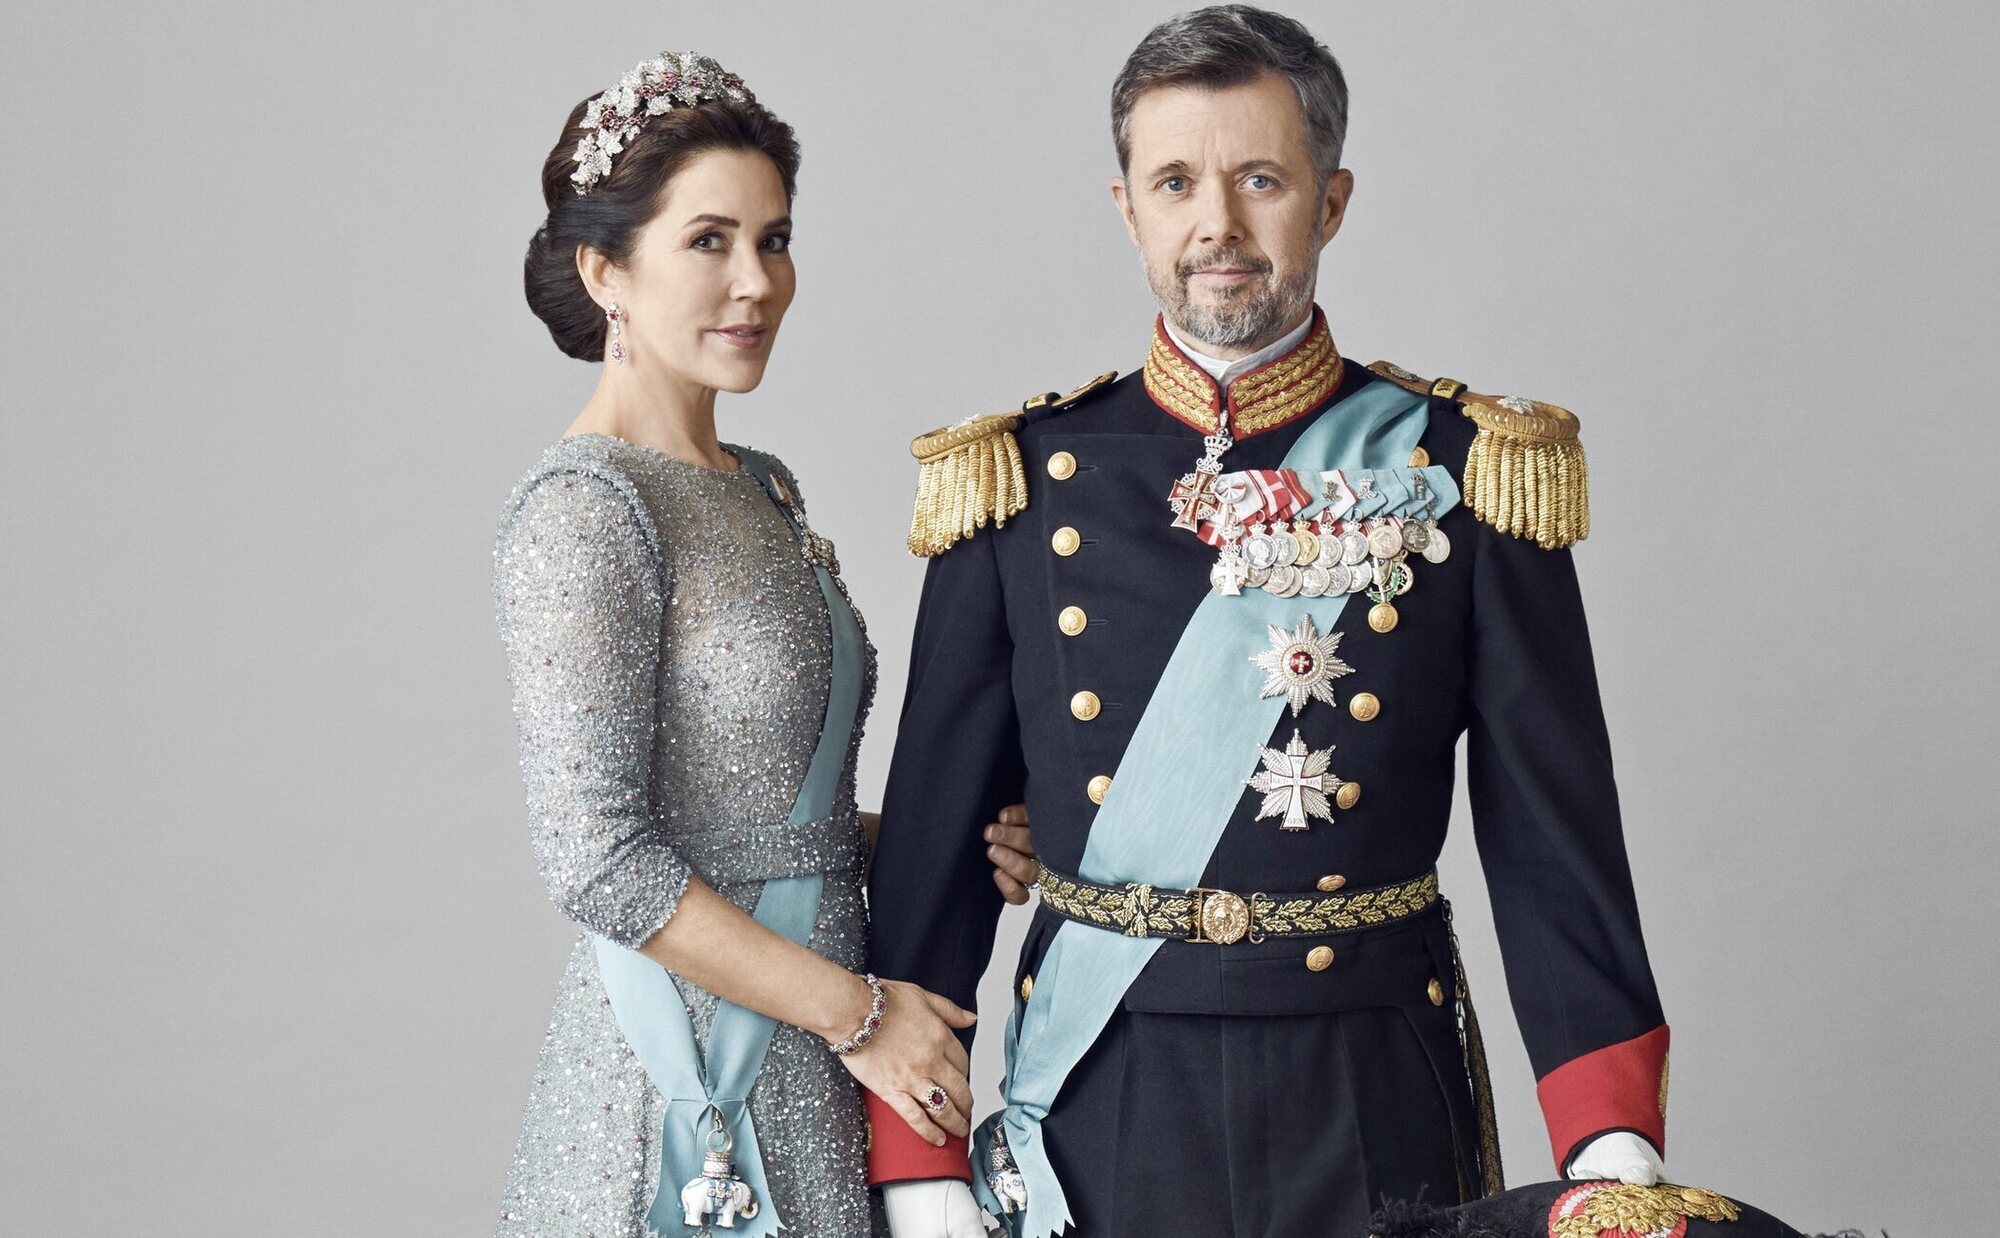 Los Reyes Federico y Mary de Dinamarca acallan polémicas en un lugar muy importante para la Monarquía danesa